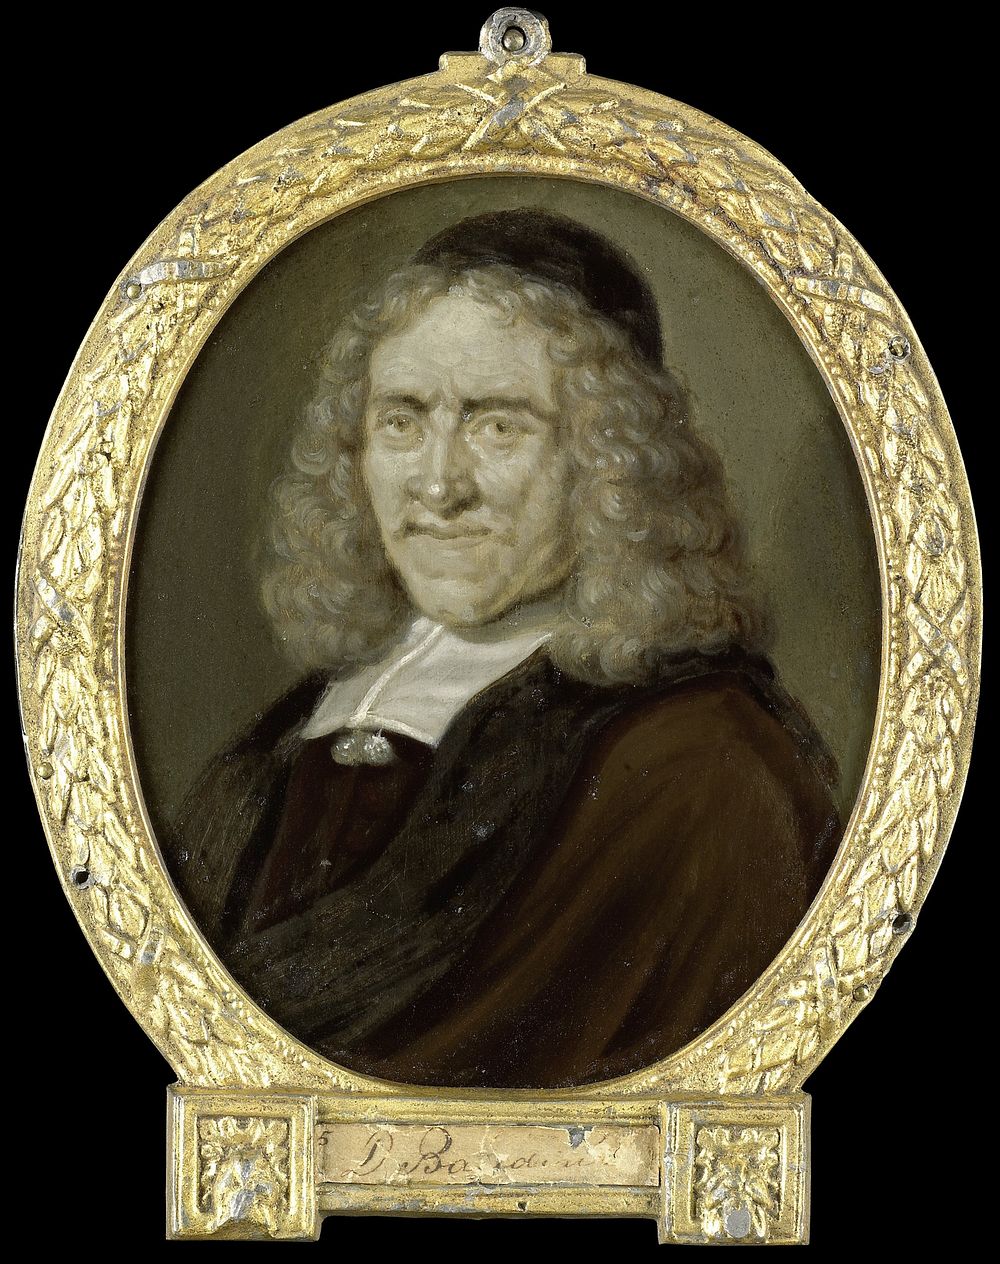 Portrait of Willem Jacobsz van Heemskerck, Poet and Engraver on Glass (1700 - 1732) by Arnoud van Halen and Abraham Bloteling